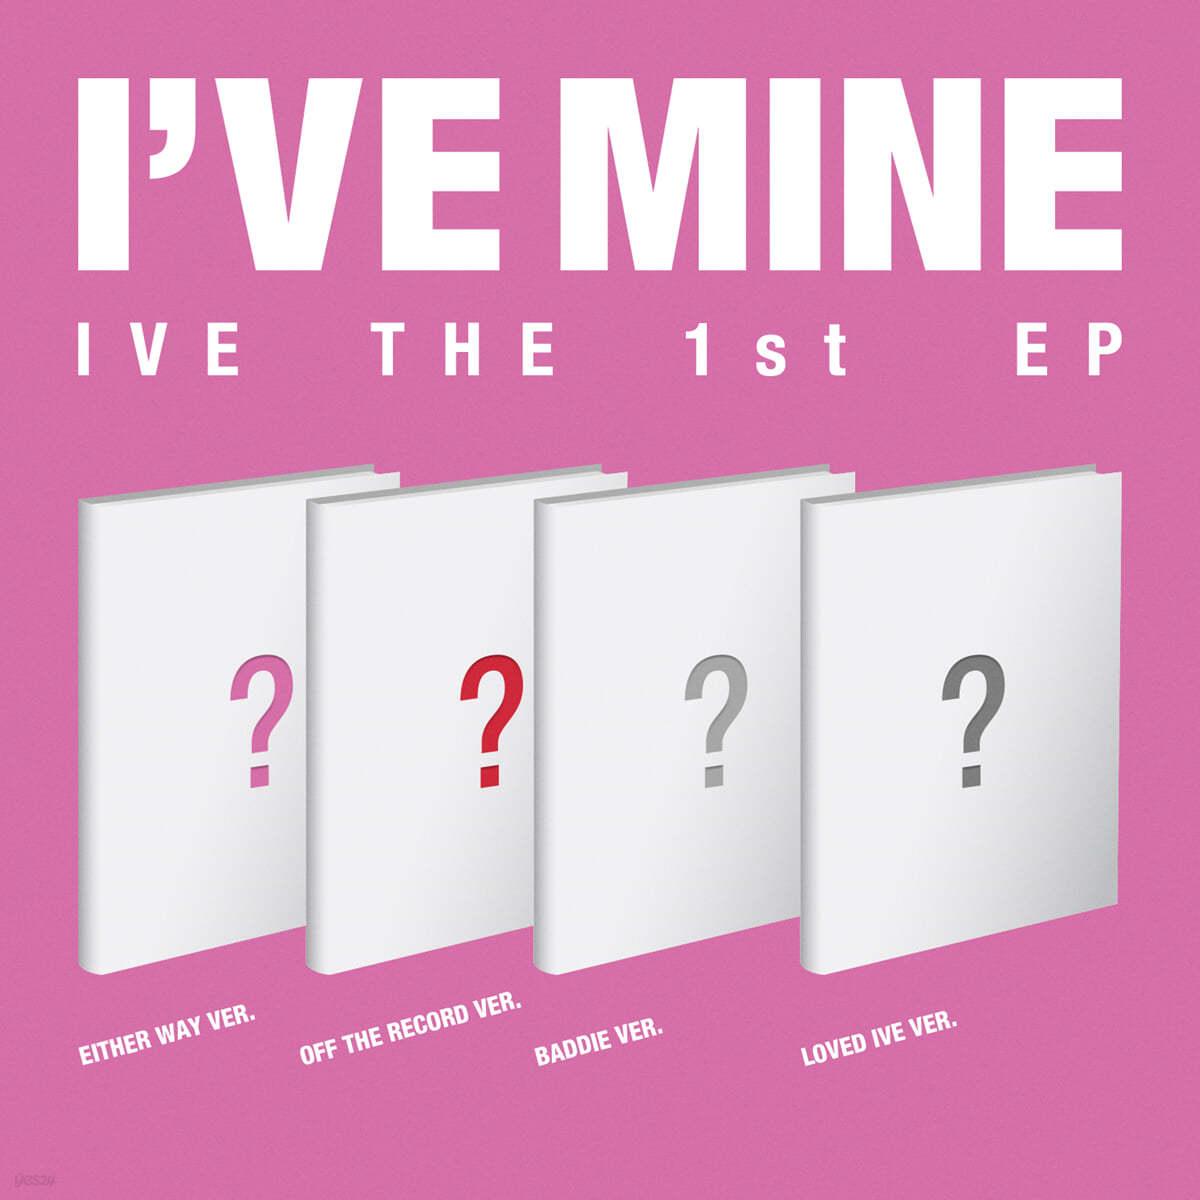 IVE 1st EP – I’VE MINE (Random) + Namil Music Benefit - KKANG